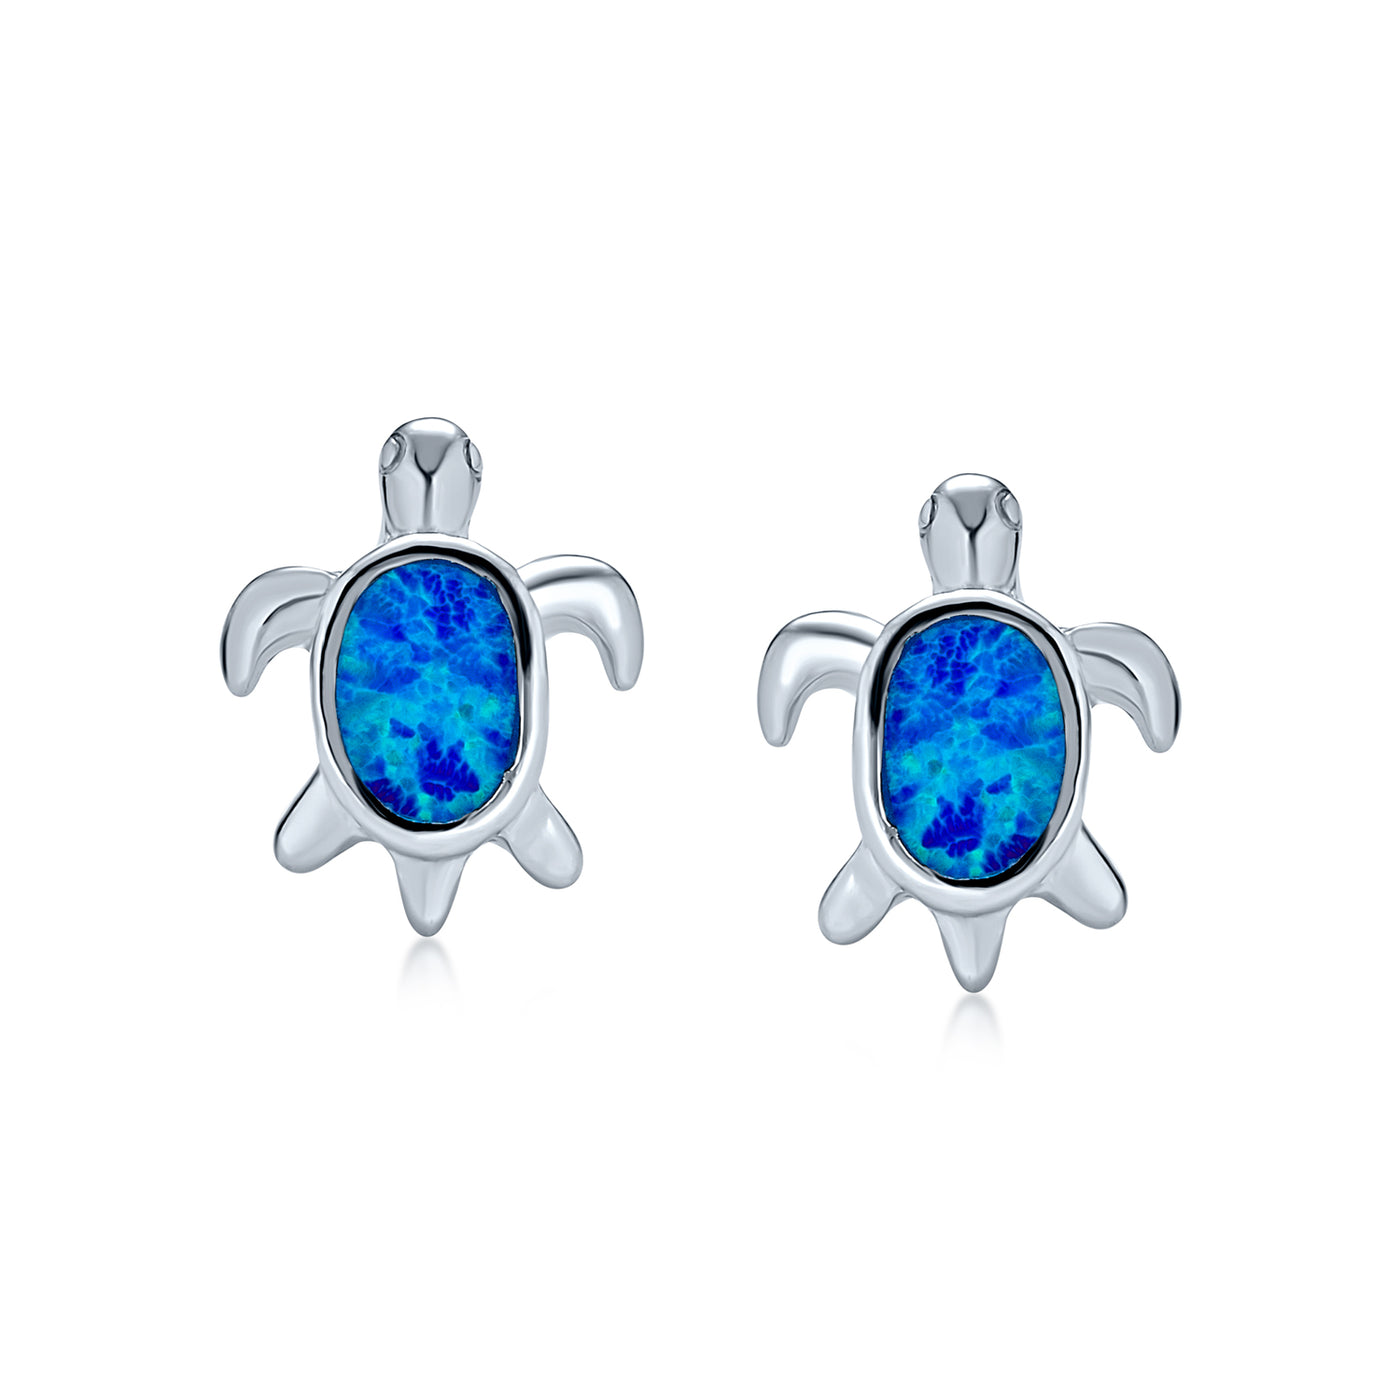 Hawaiian Blue Created Opal Turtle Stud Earrings Small Sterling Silver